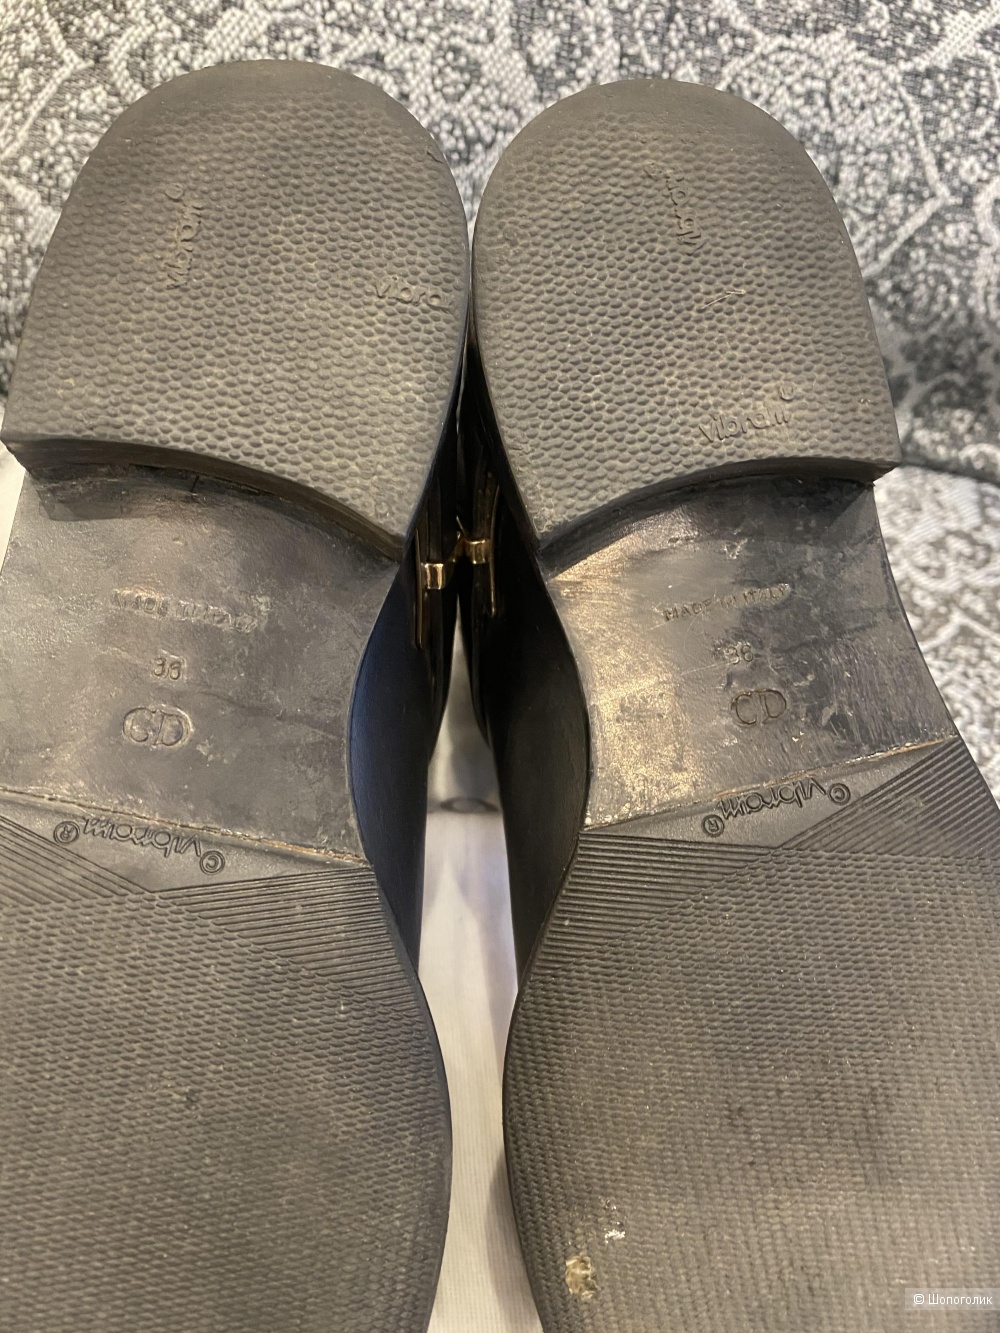 Ботинки Dior на 36